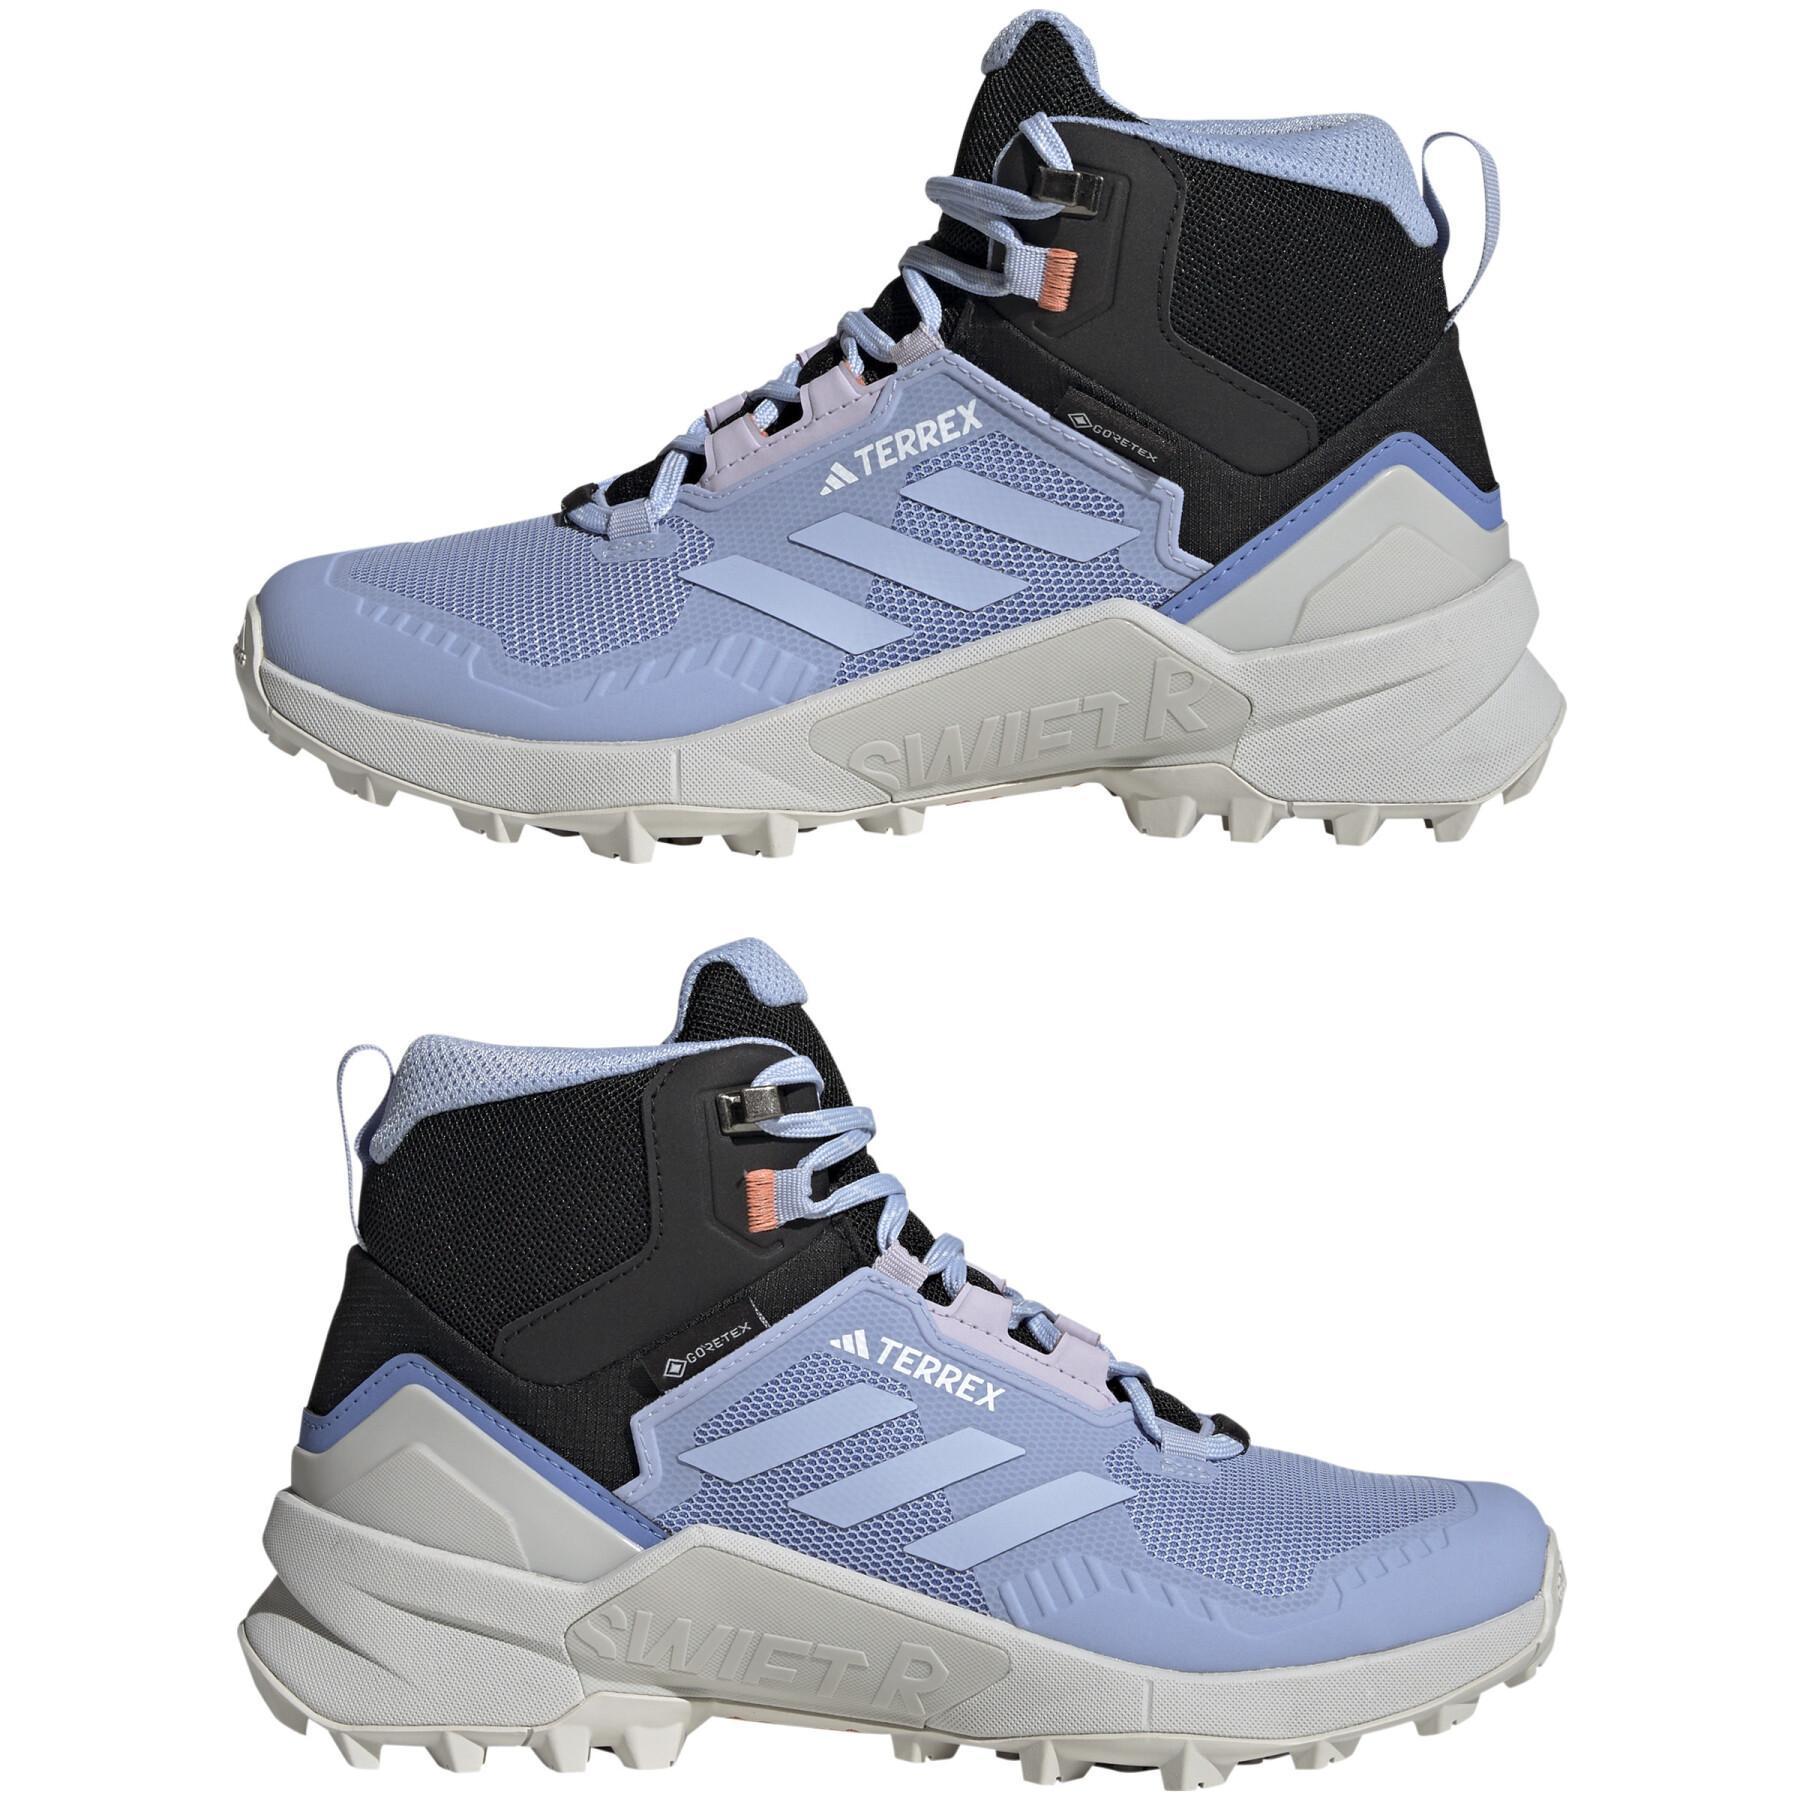 Zapatillas de senderismo para mujer adidas Terrex Swift R3 Mid GORE-TEX